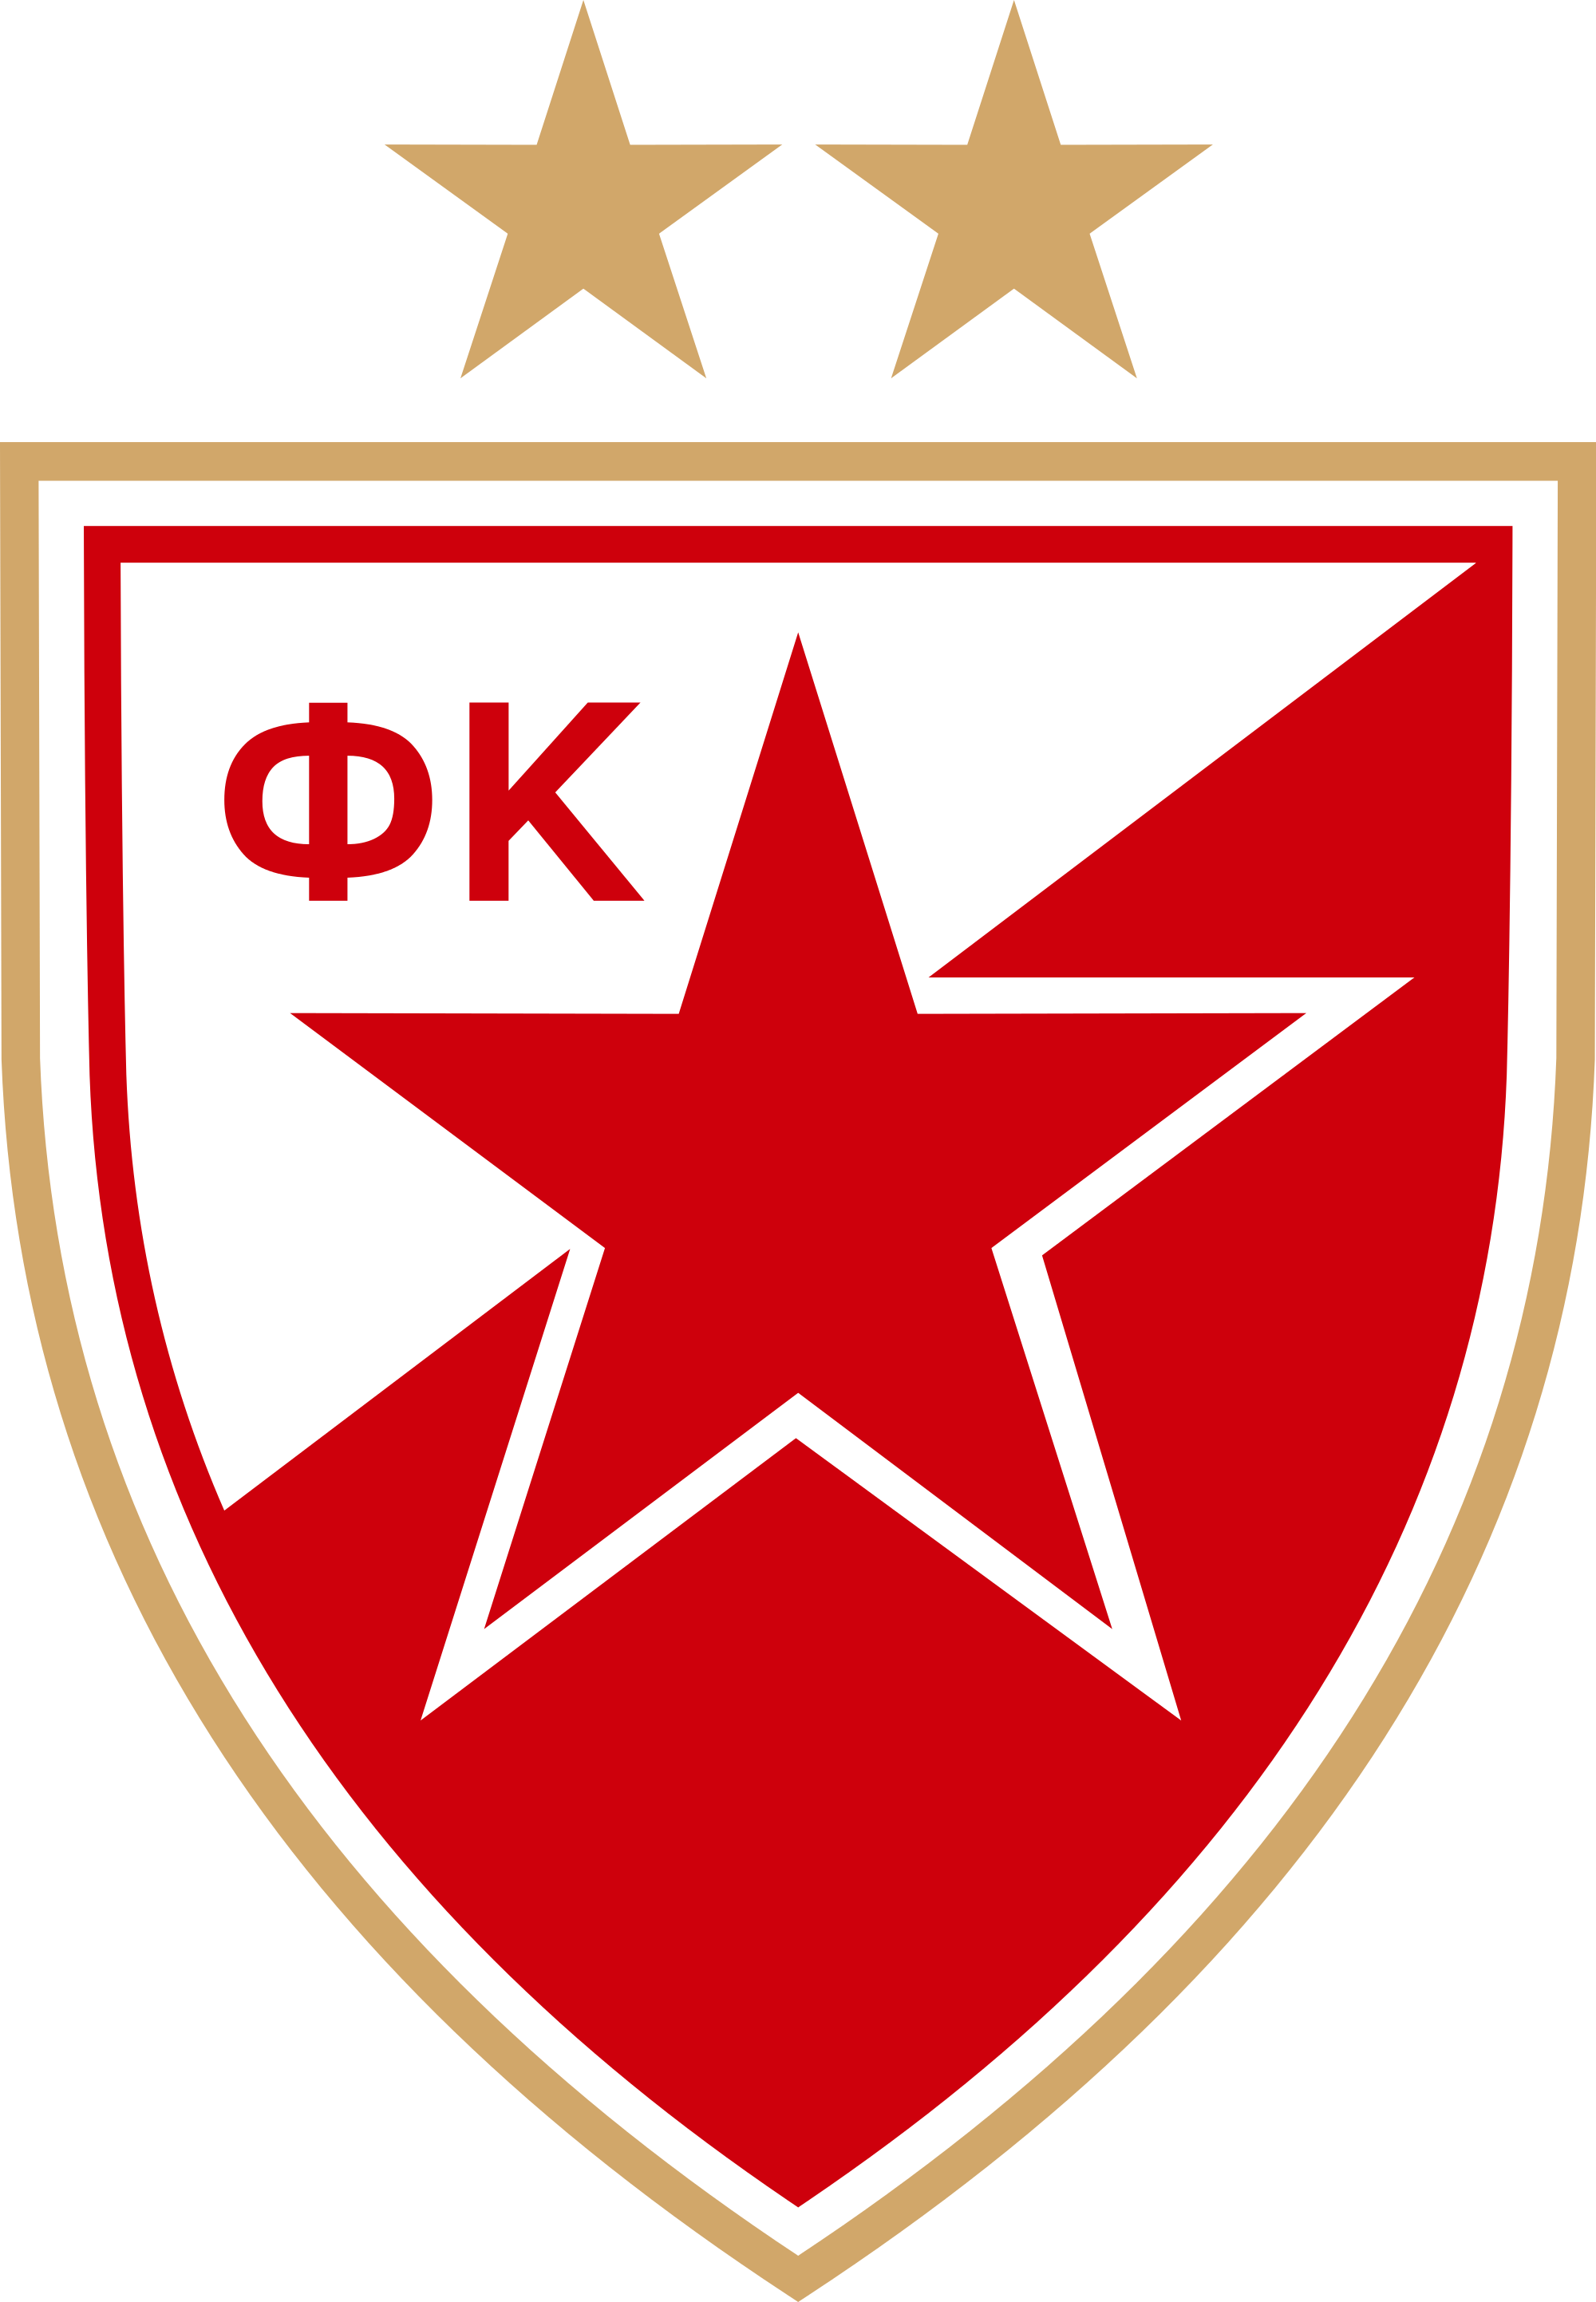 FK Crvena zvezda logo